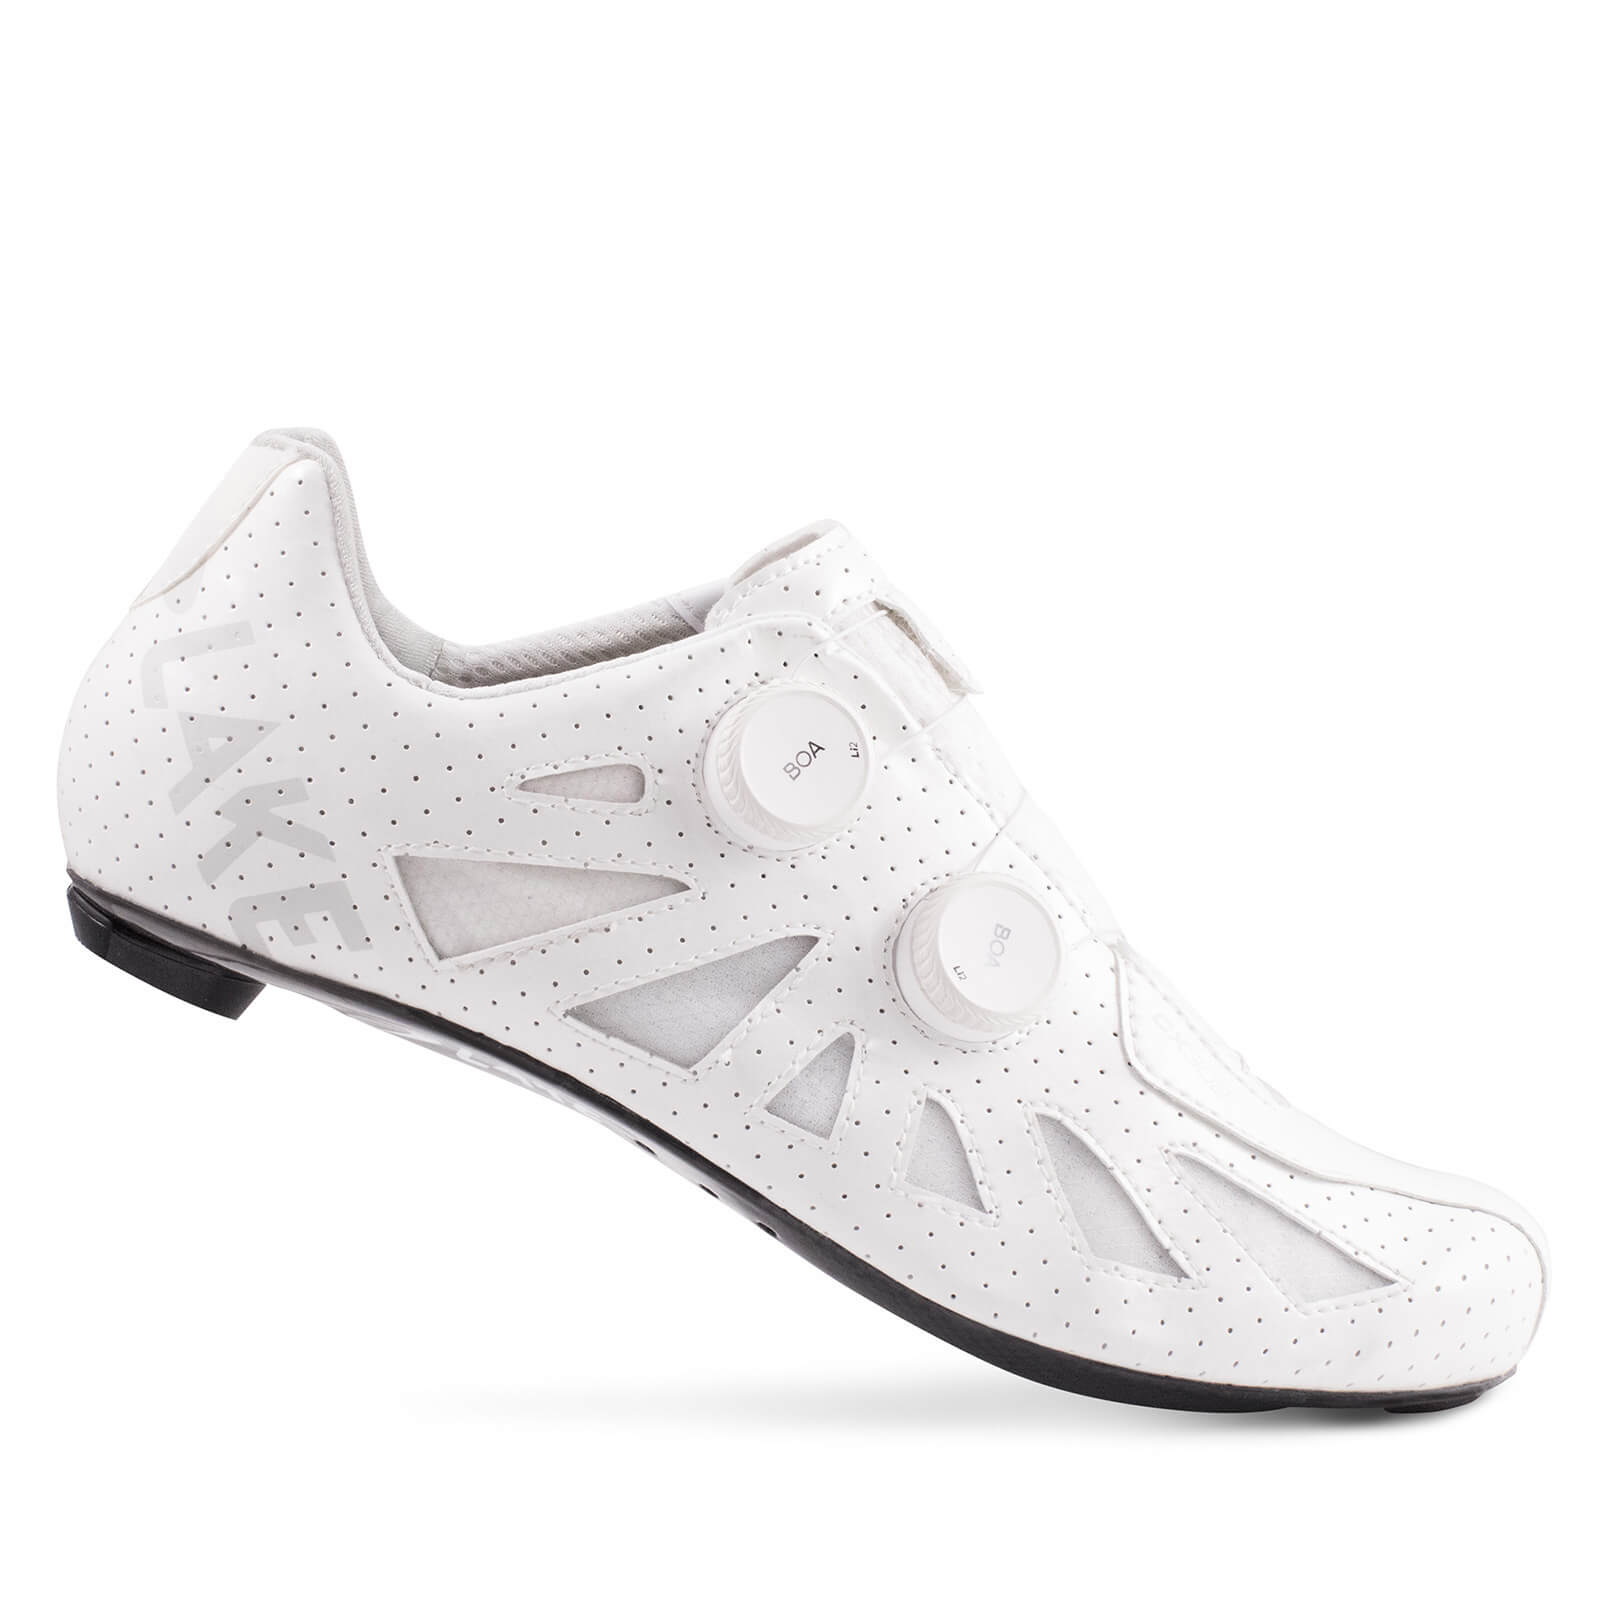 Lake CX302 Road Shoes - EU44 - White